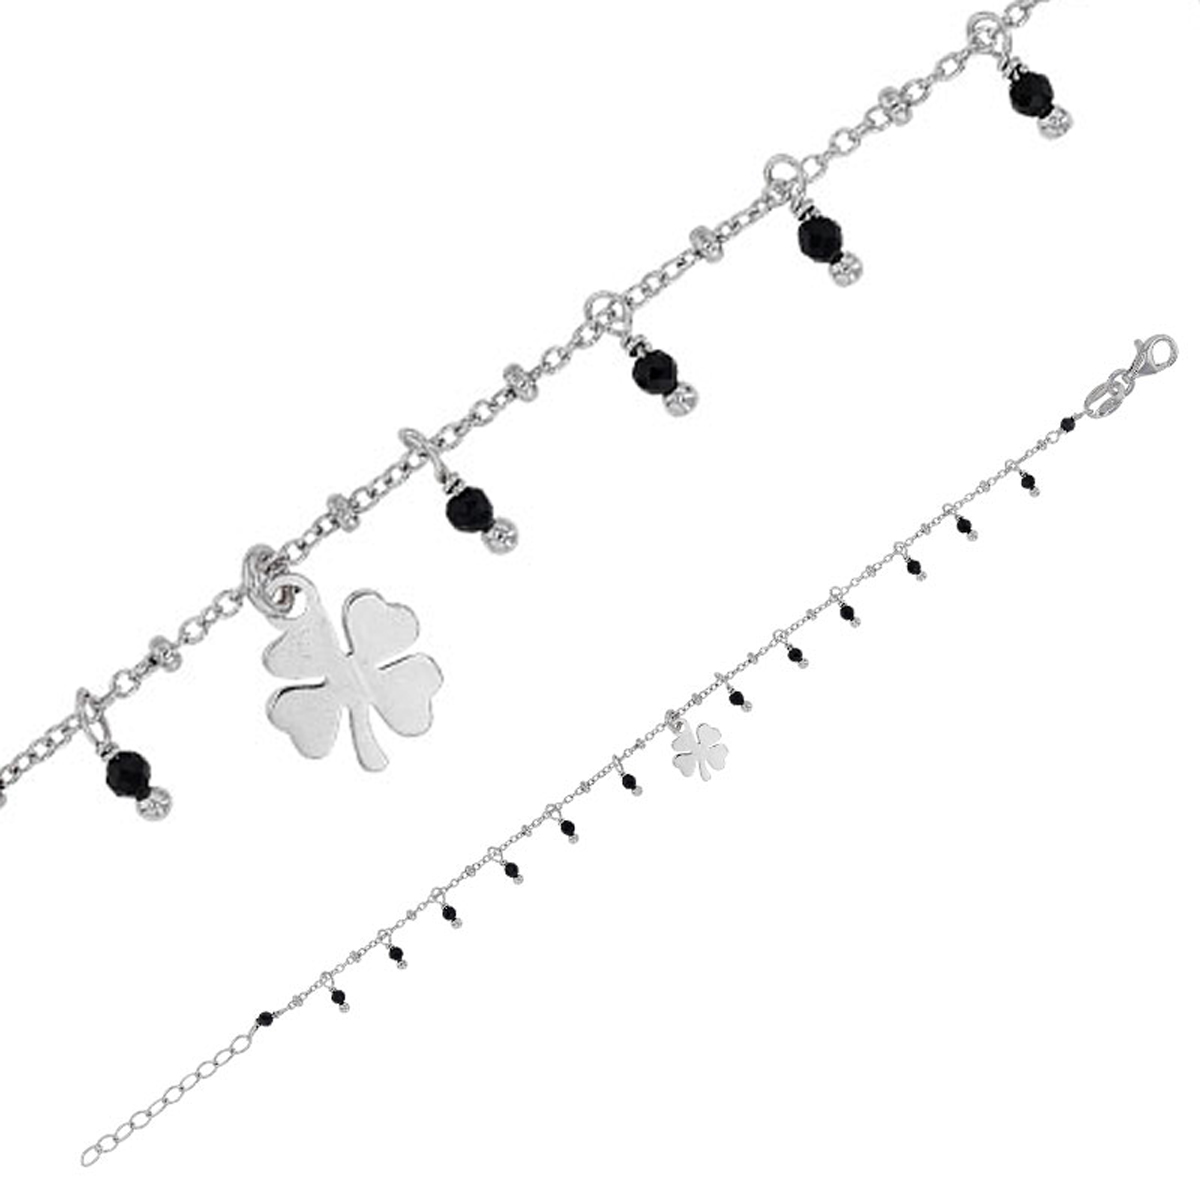 Bracelet Argent artisanal \'Cléopatra\' noir argenté (rhodié) - 8 mm (trèfle) - [R4979]